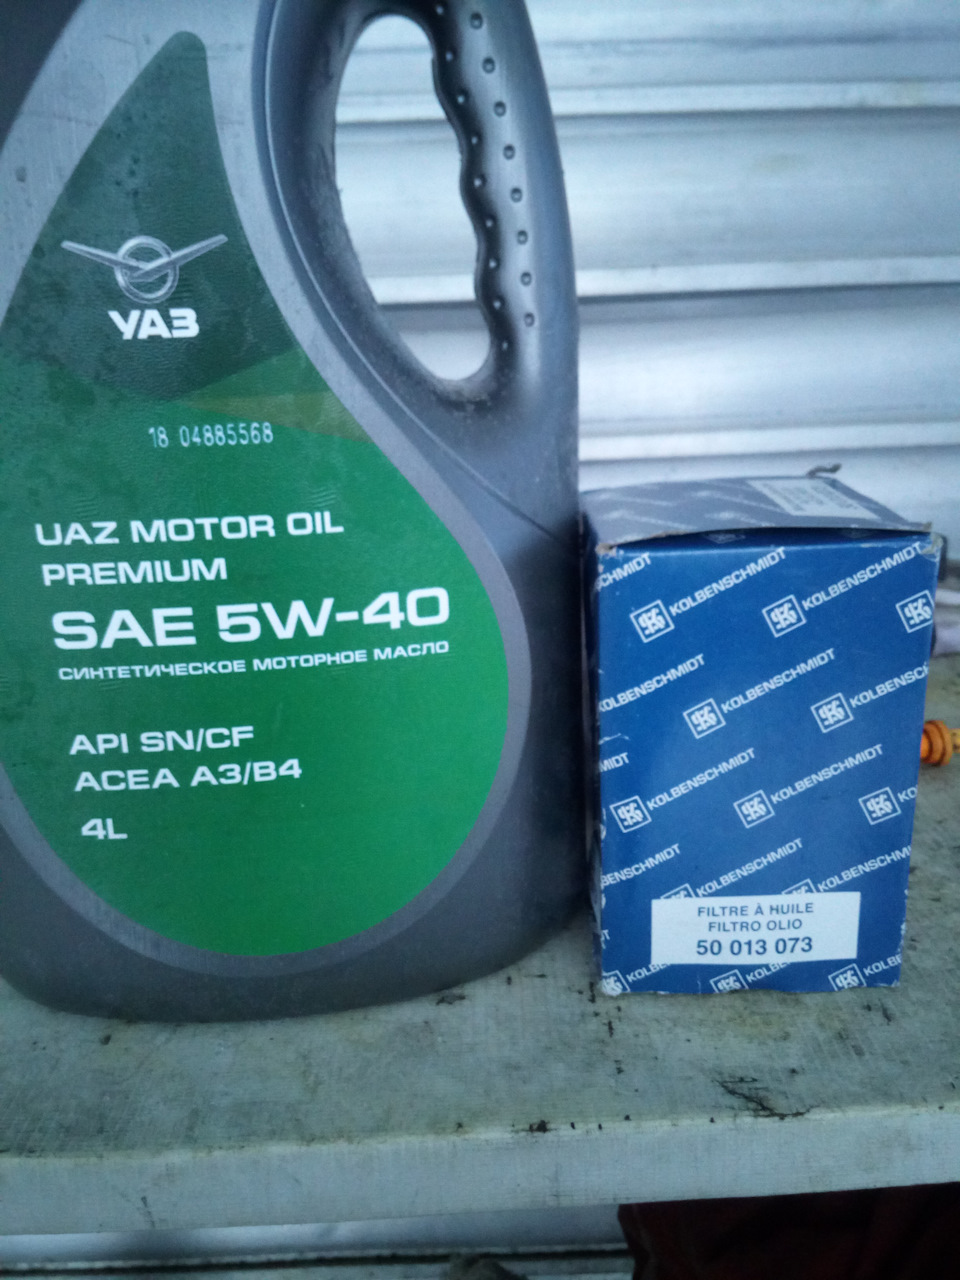 Масло уаз патриот 2019. УАЗ Premium 5w-40. UAZ Motor Oil 5w-40. Масло UAZ Motor Oil Premium 5w-40. UAZ Motor Oil Premium 5w-40 API SN.